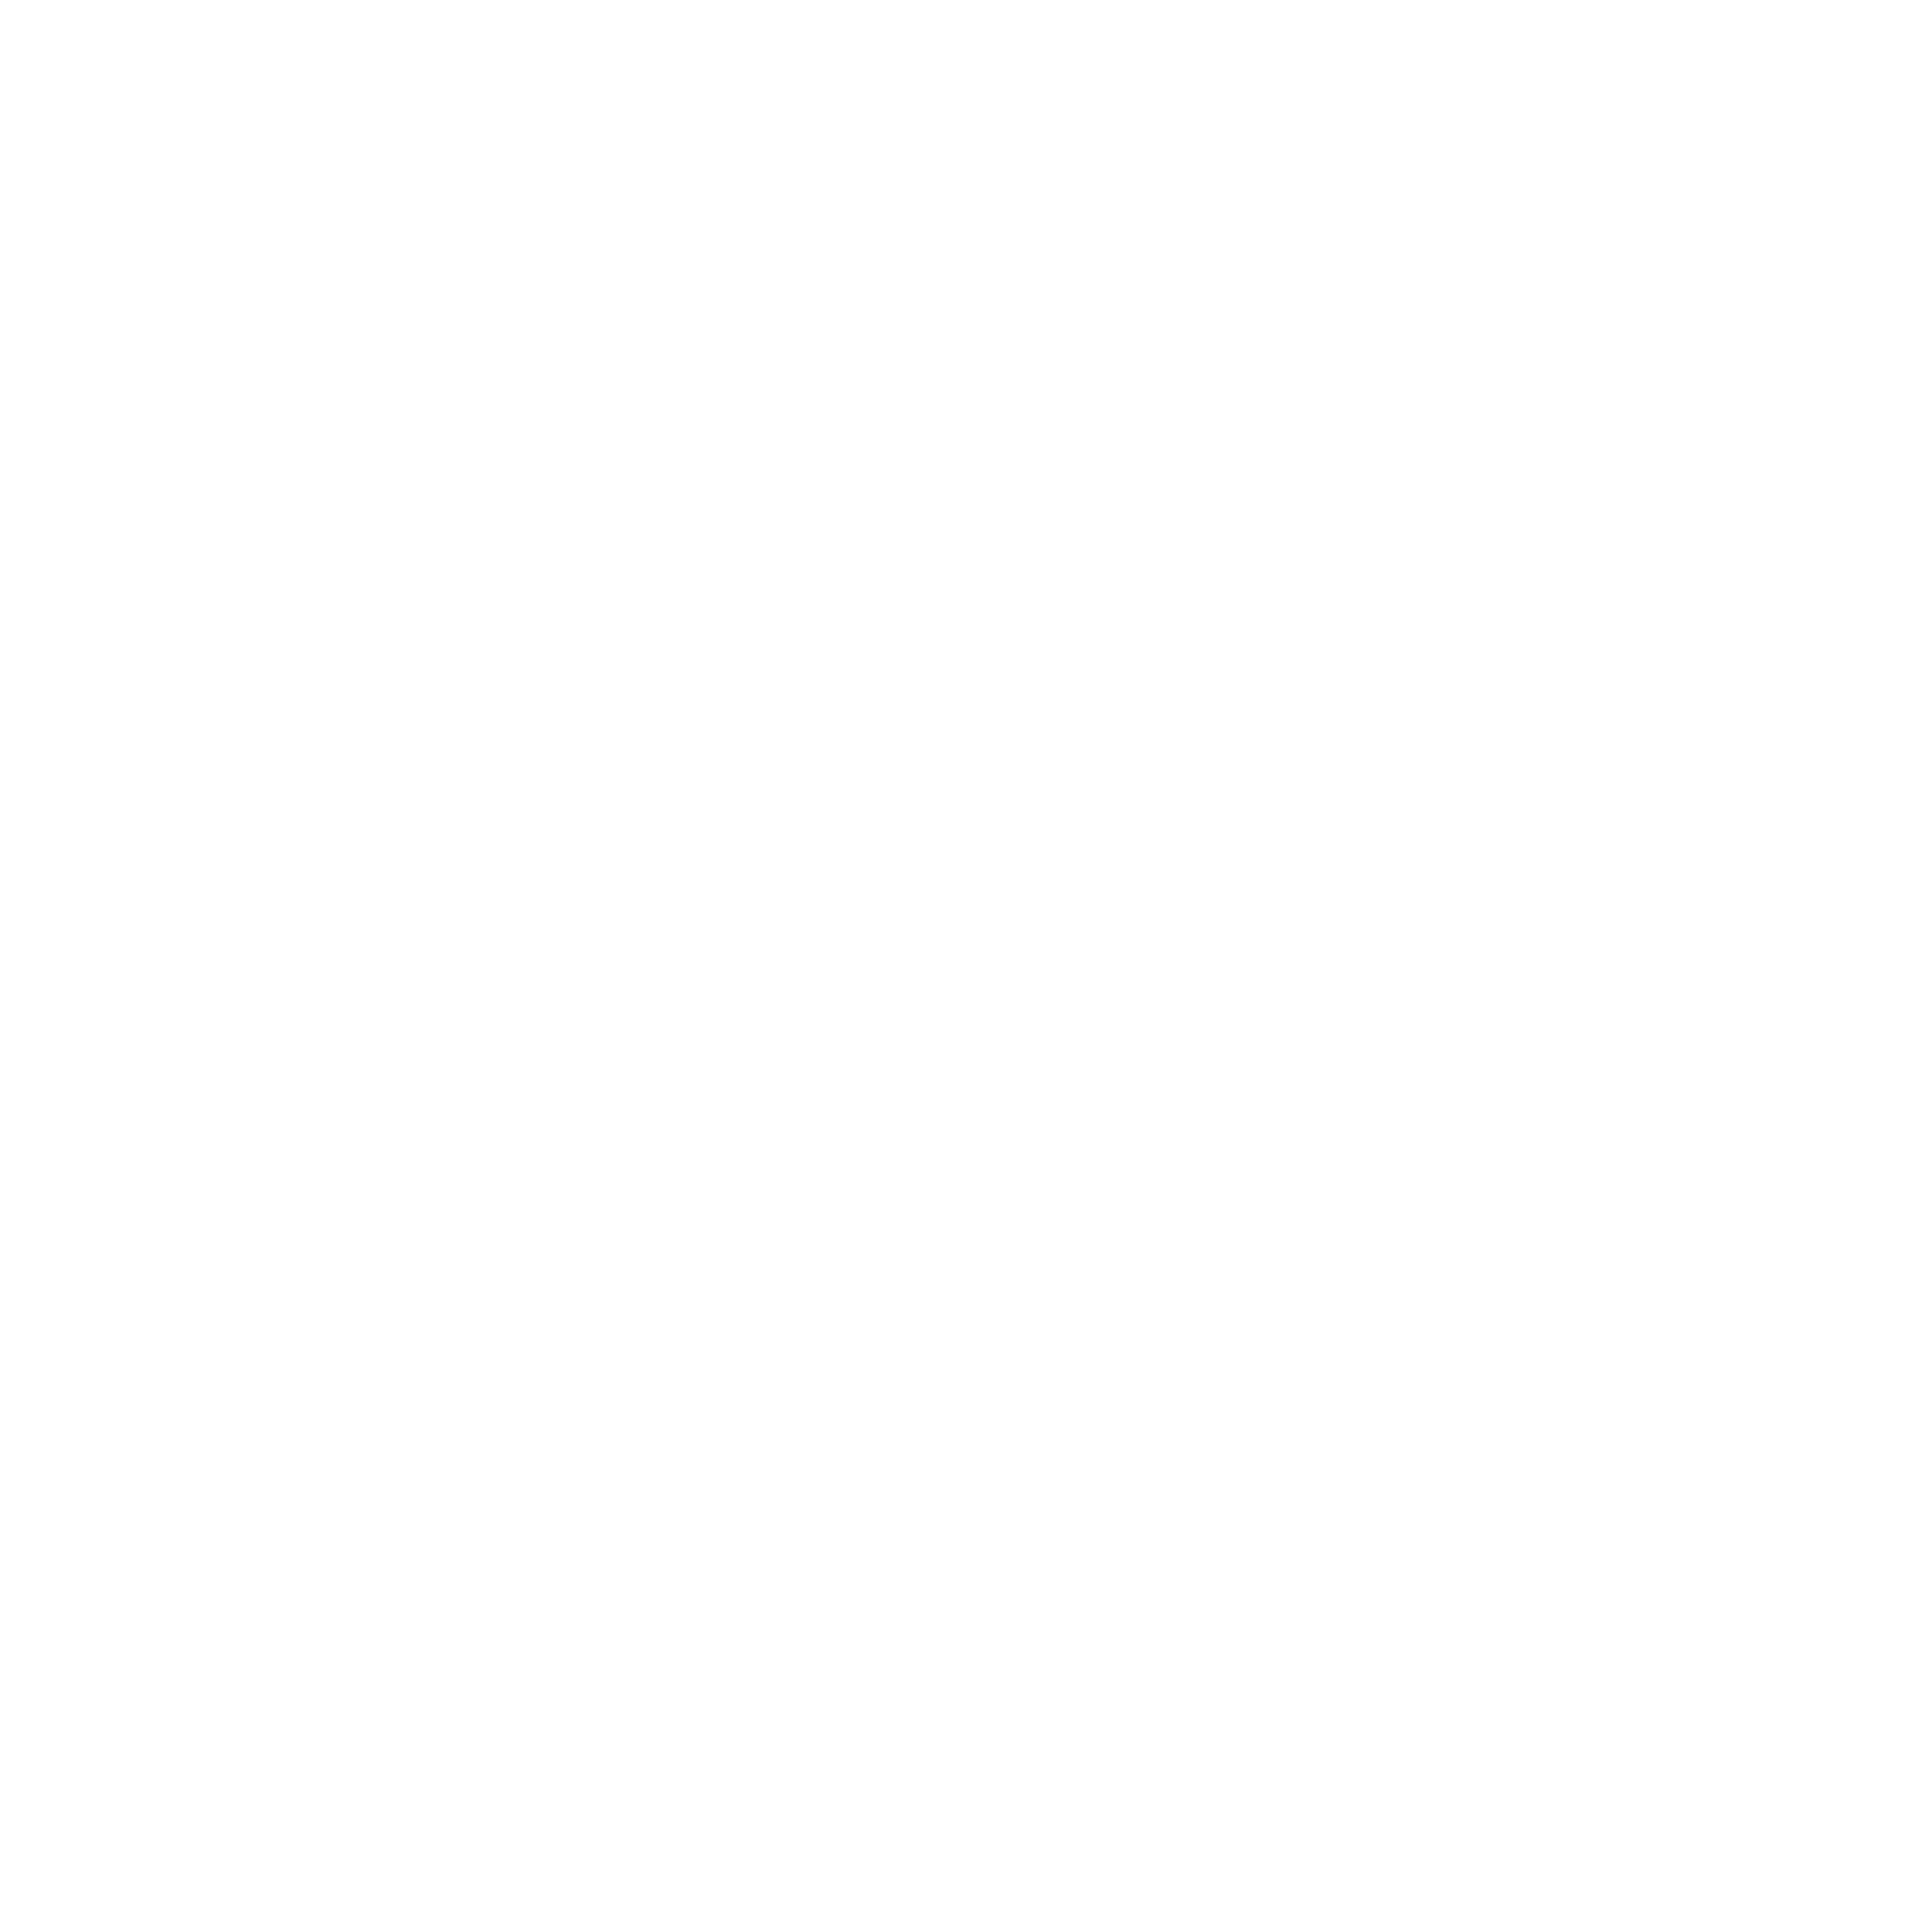 Messenger Download Messenger